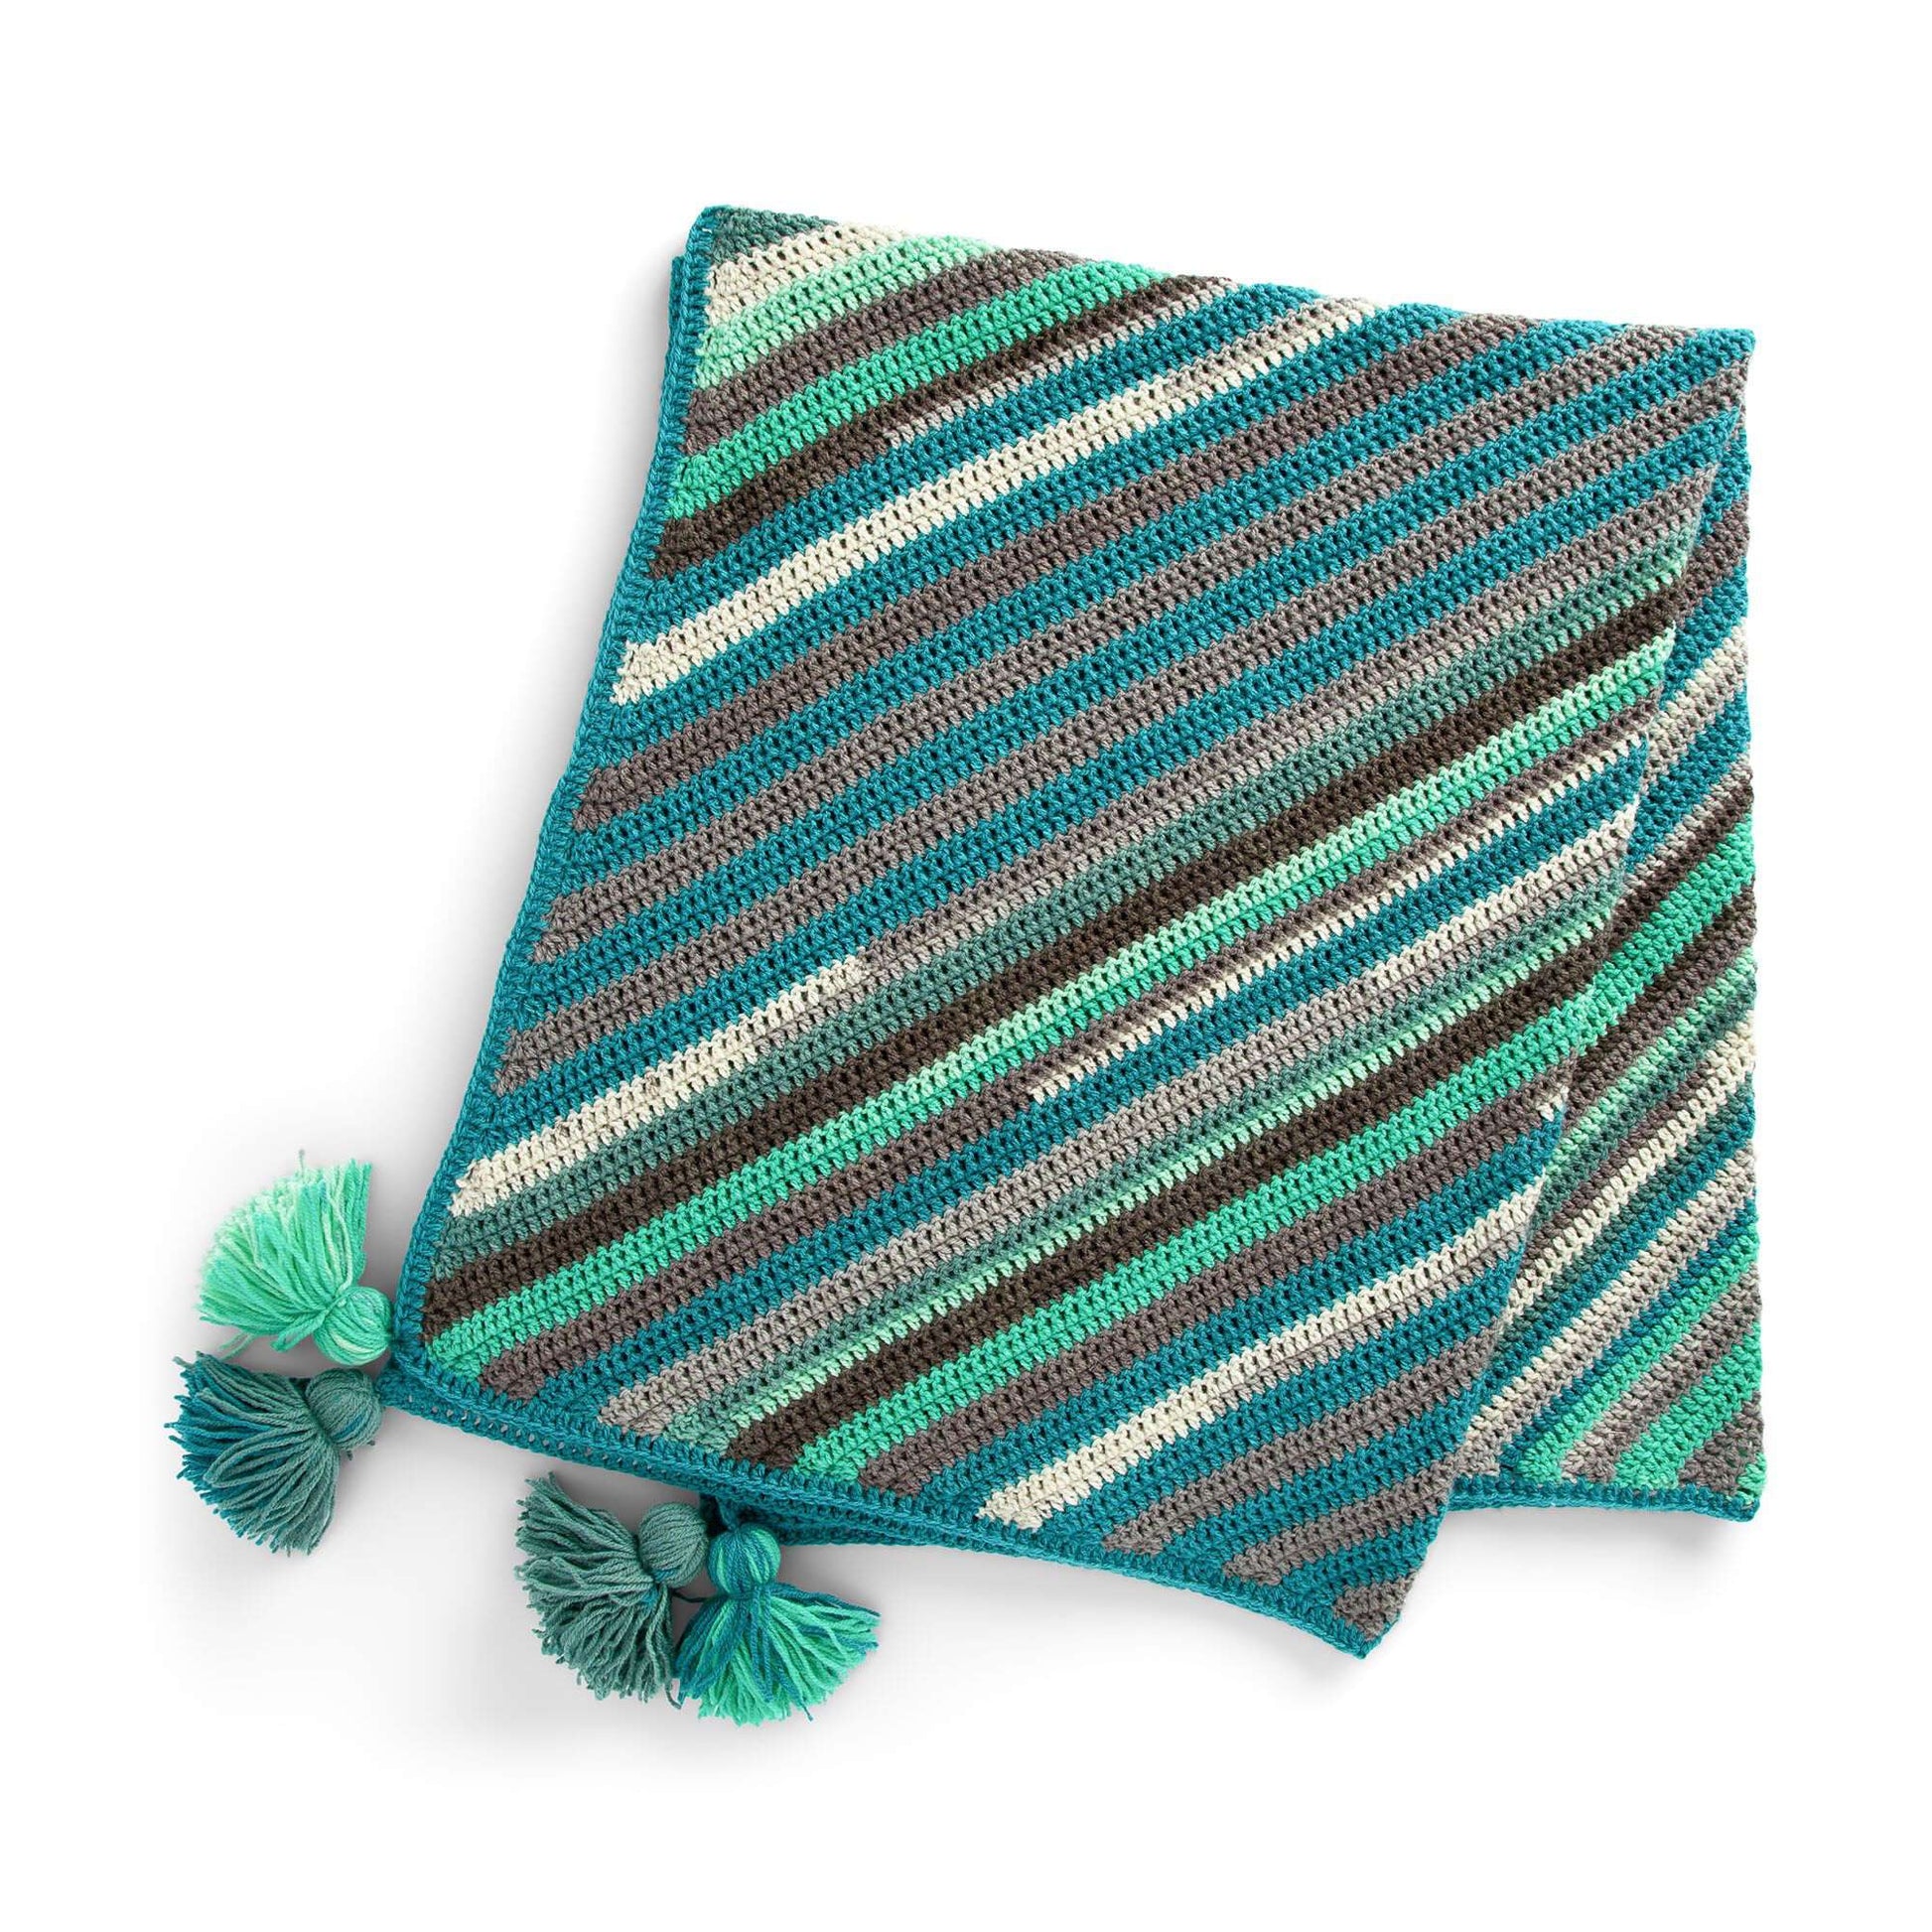 Caron Diagonal Stripes Crochet Blanket Single Size